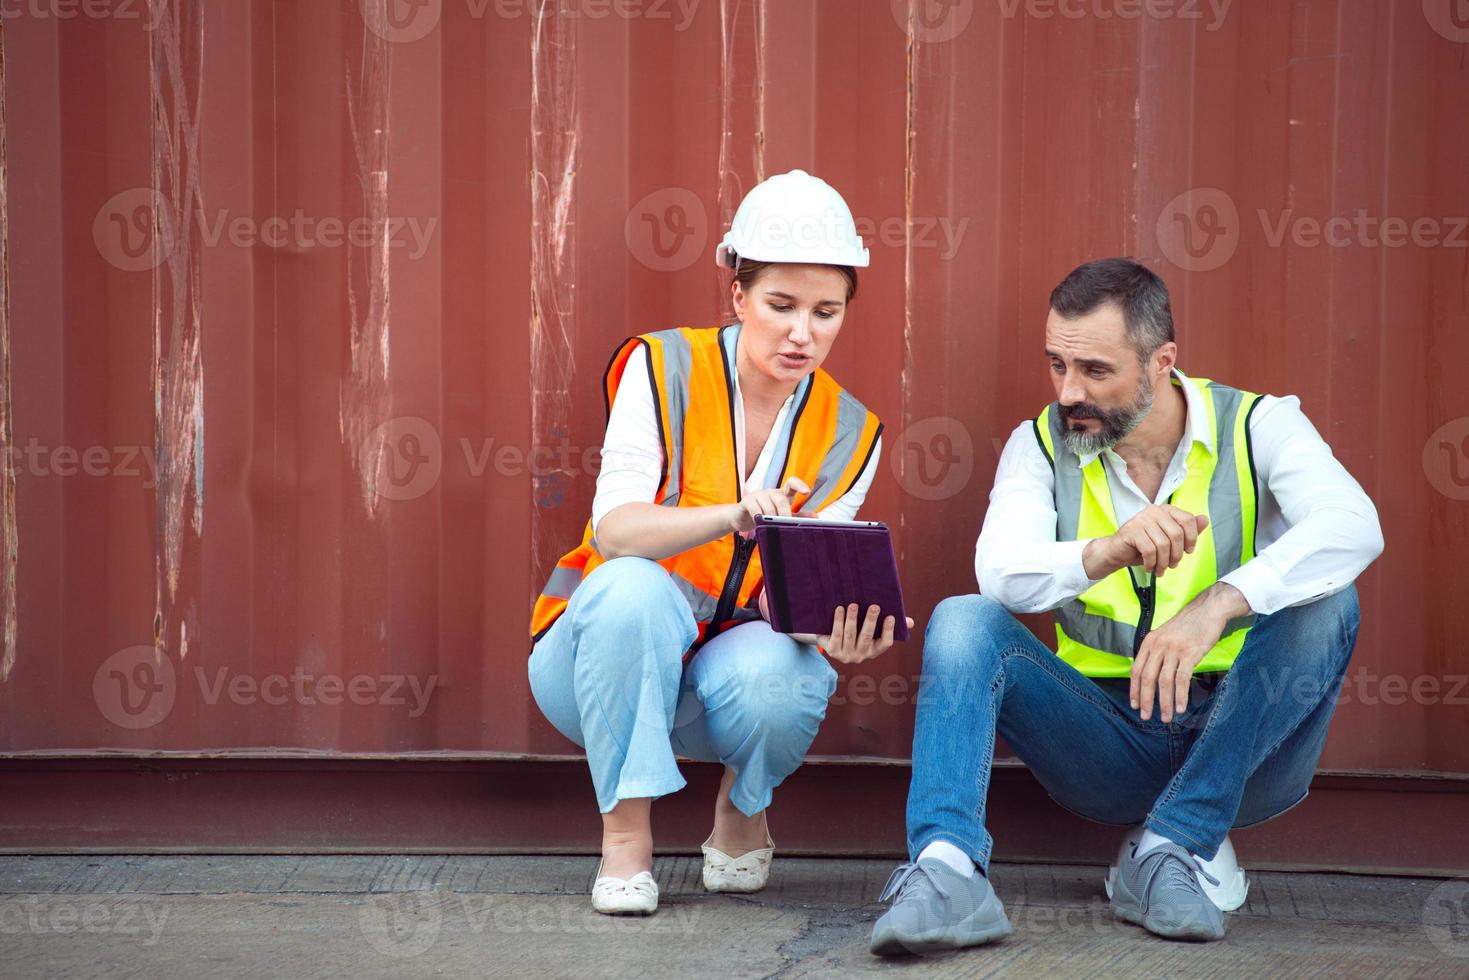 gerente masculino e feminino sentam e discutem sobre seu trabalho para envio ao cliente. distribuição armazenamento comércio porto de carga. foto